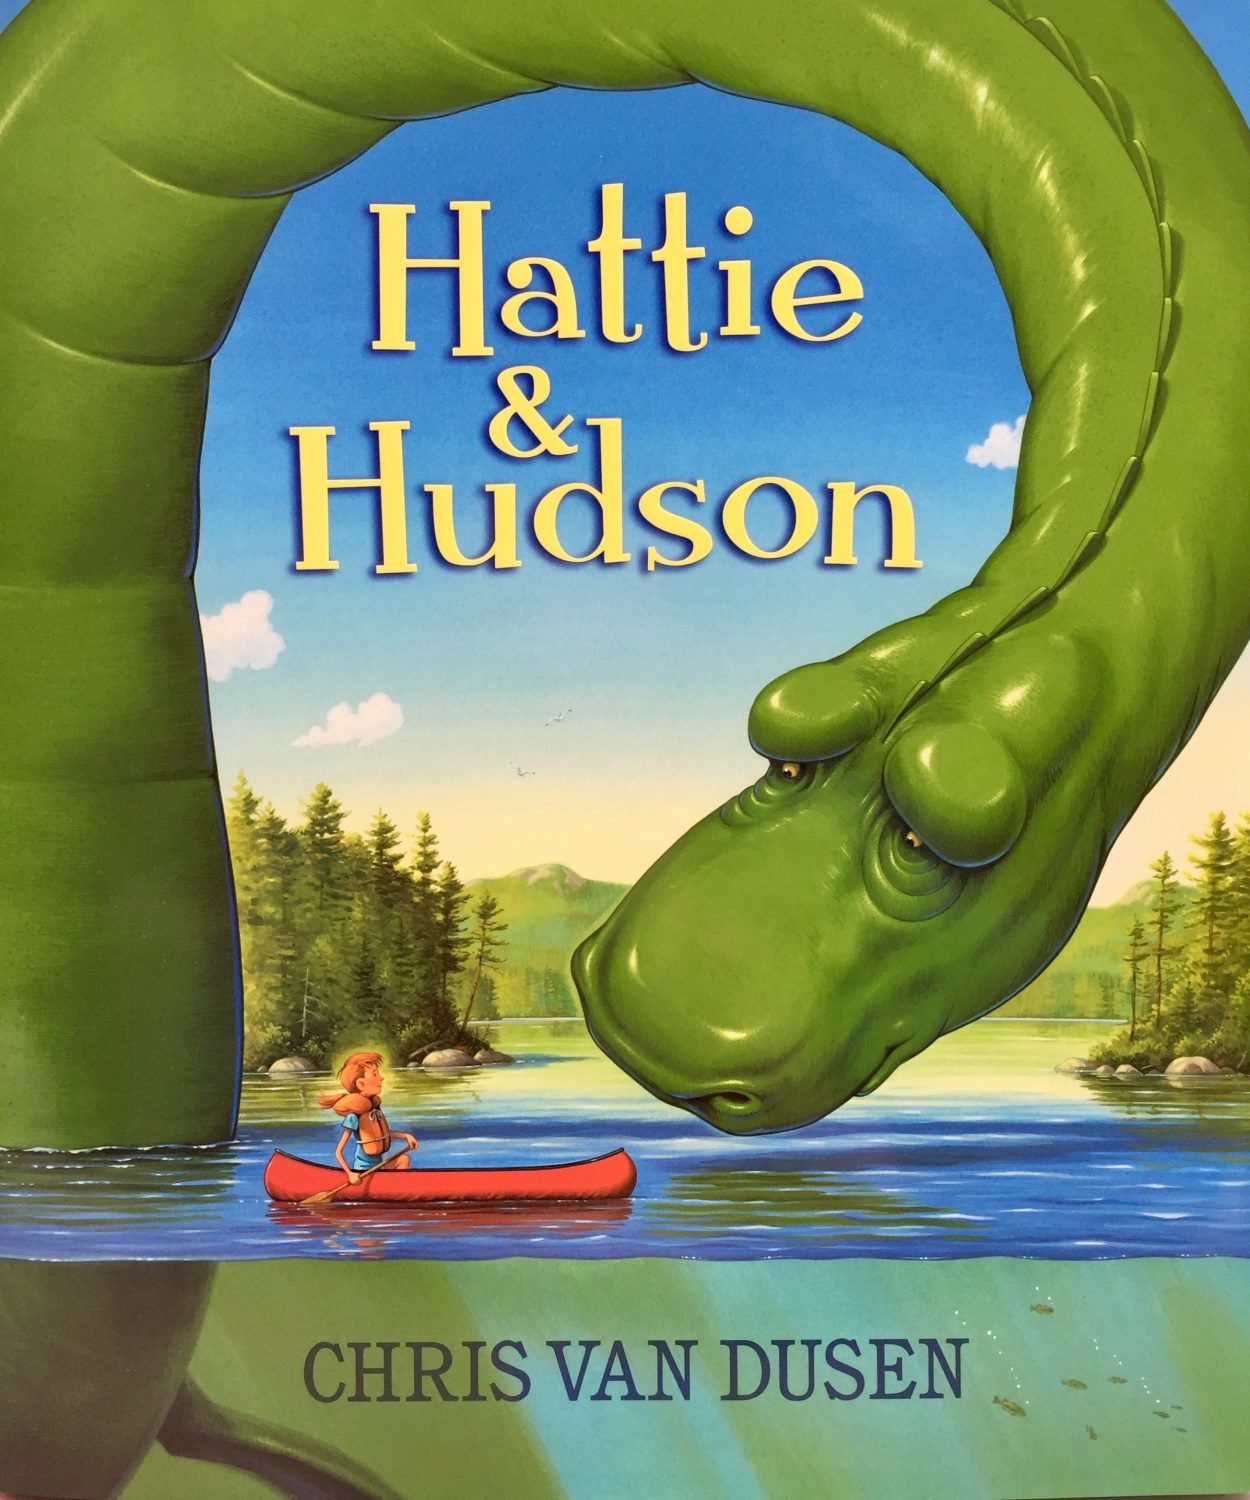 chris-van-dusen-hattie-hudson-cover-1250x1500.jpg